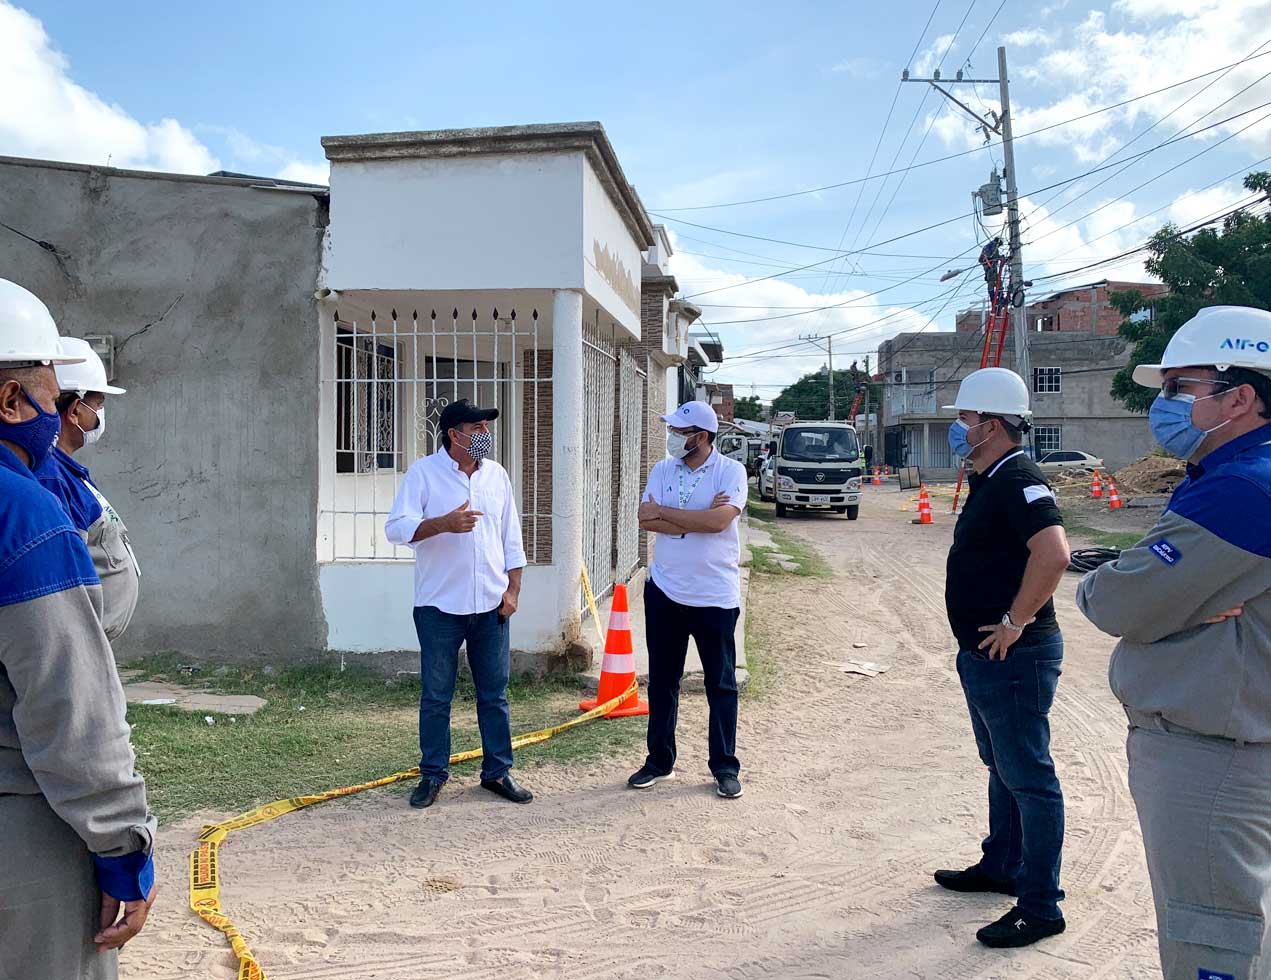 Gerente General de Air-e supervisó mejoras eléctricas en el barrio Manantial de Riohacha